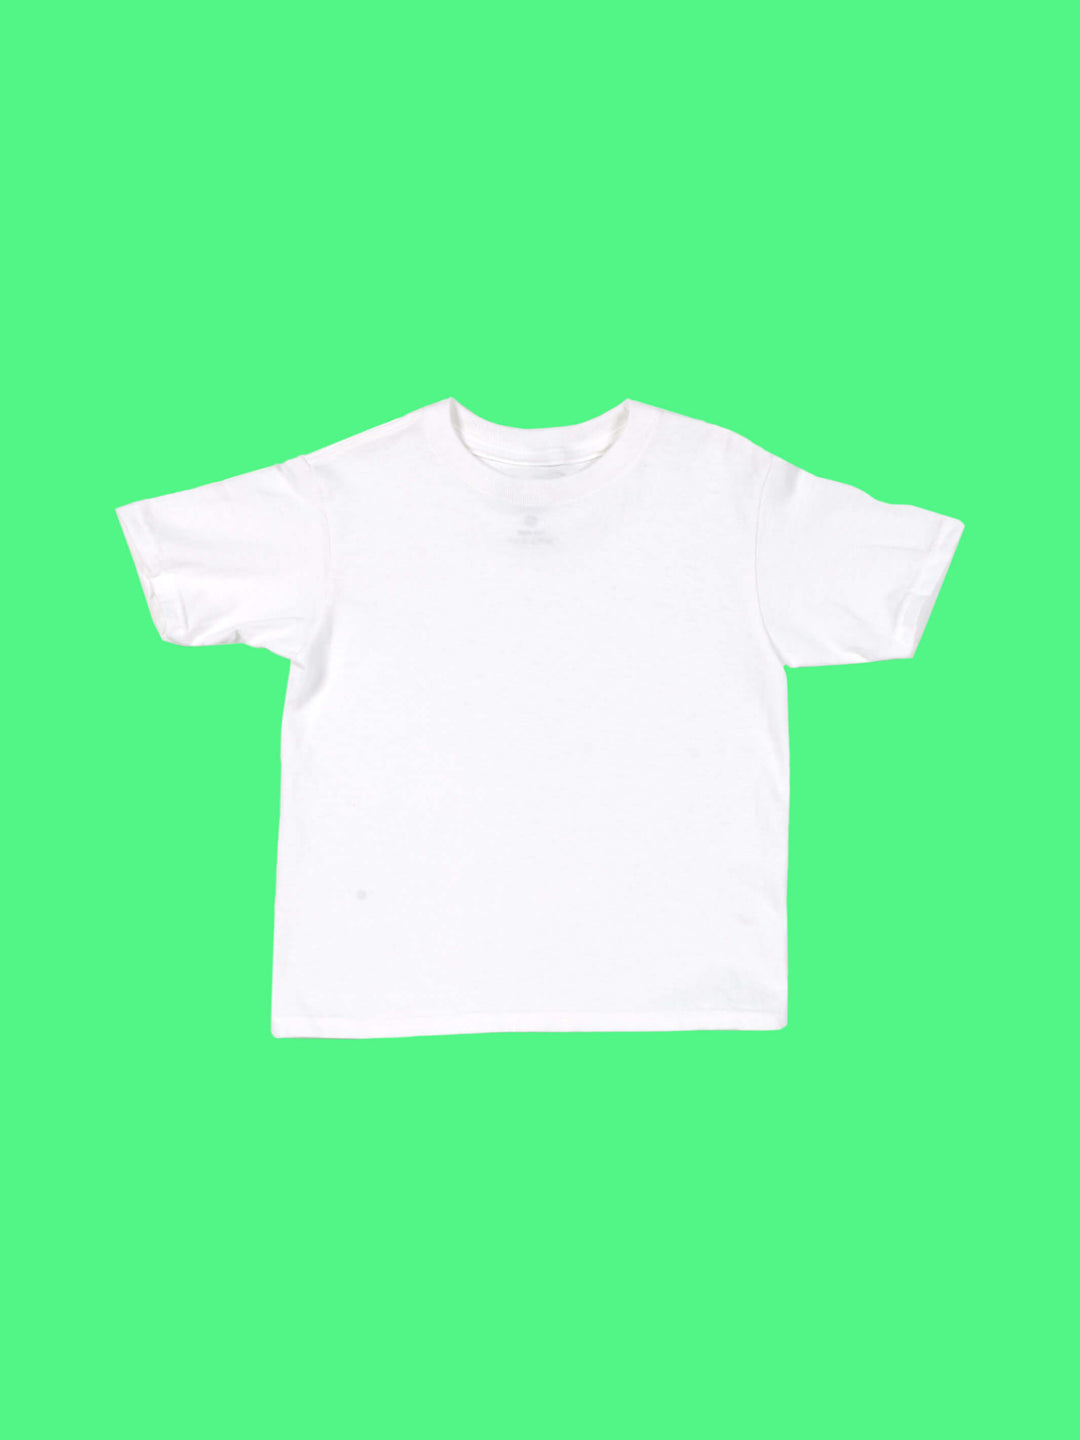 Popkiller custom printed white kid's t-shirt.